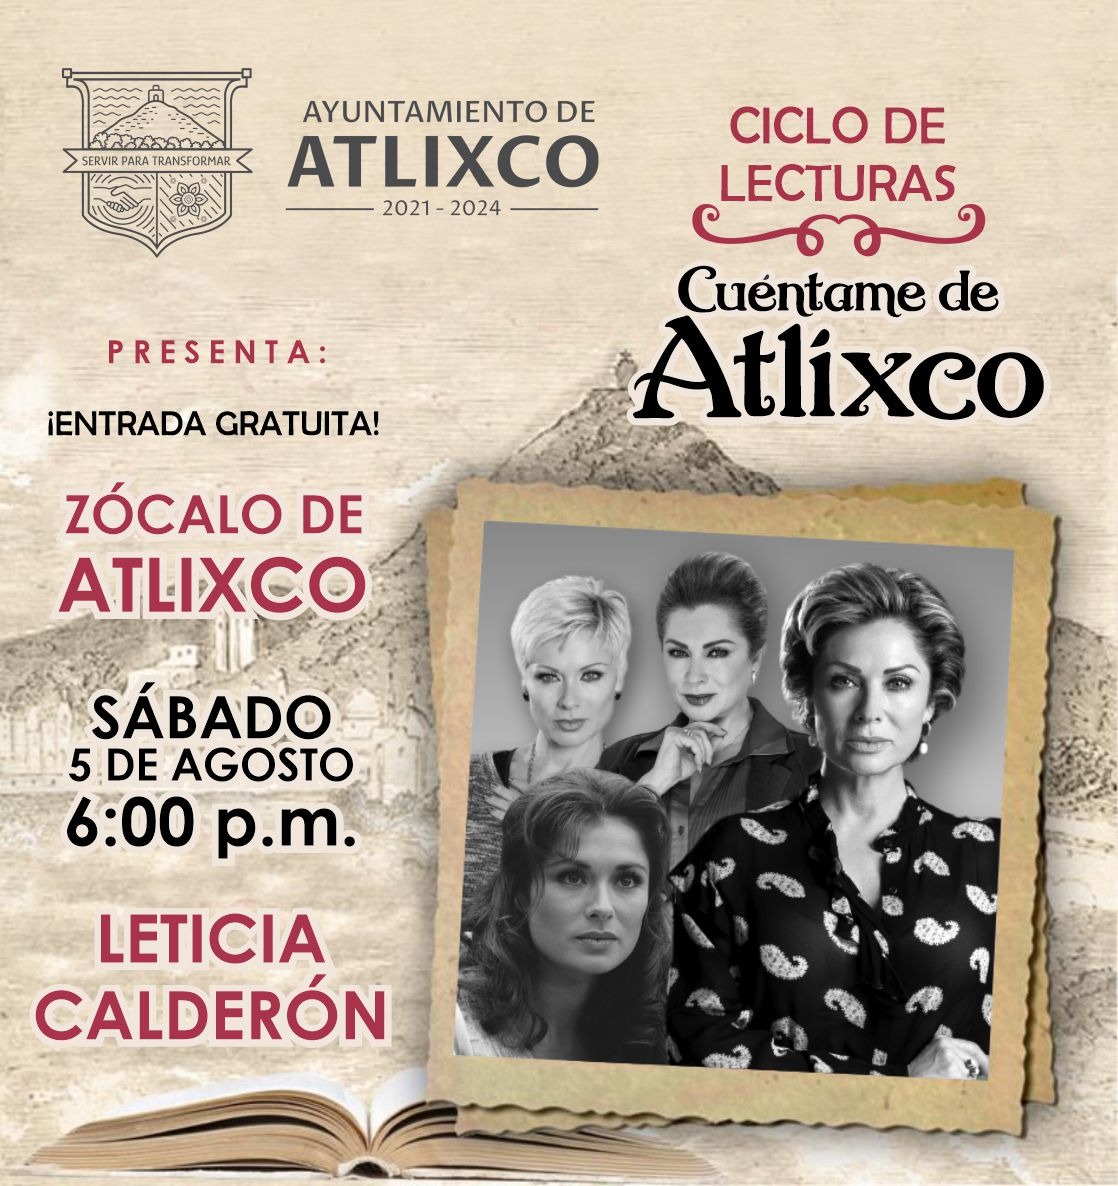 Estará Leticia Calderón en “Cuéntame de Atlixco”